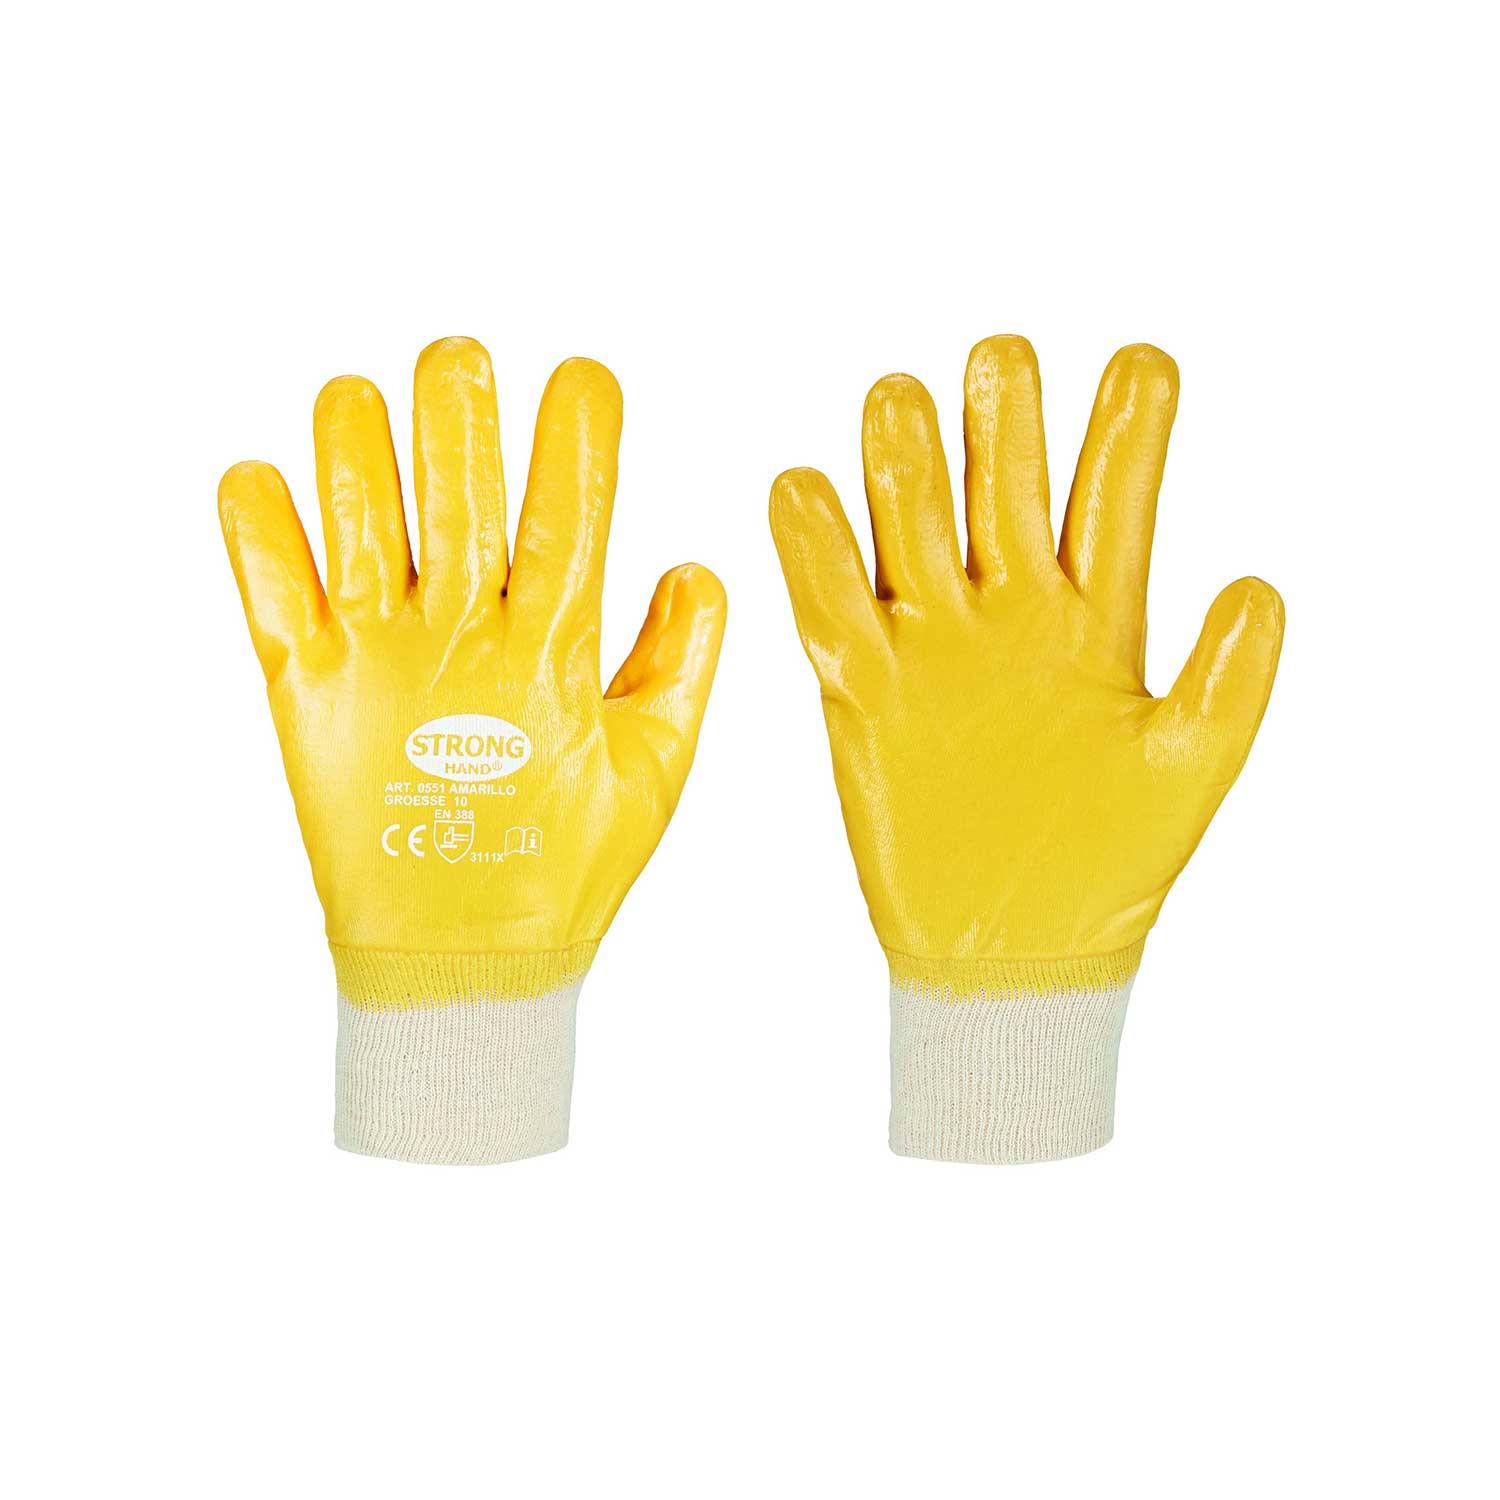 Amarillo Stronghand Handschuh, Nitril gelb, vollbeschichtet, Gr. 11